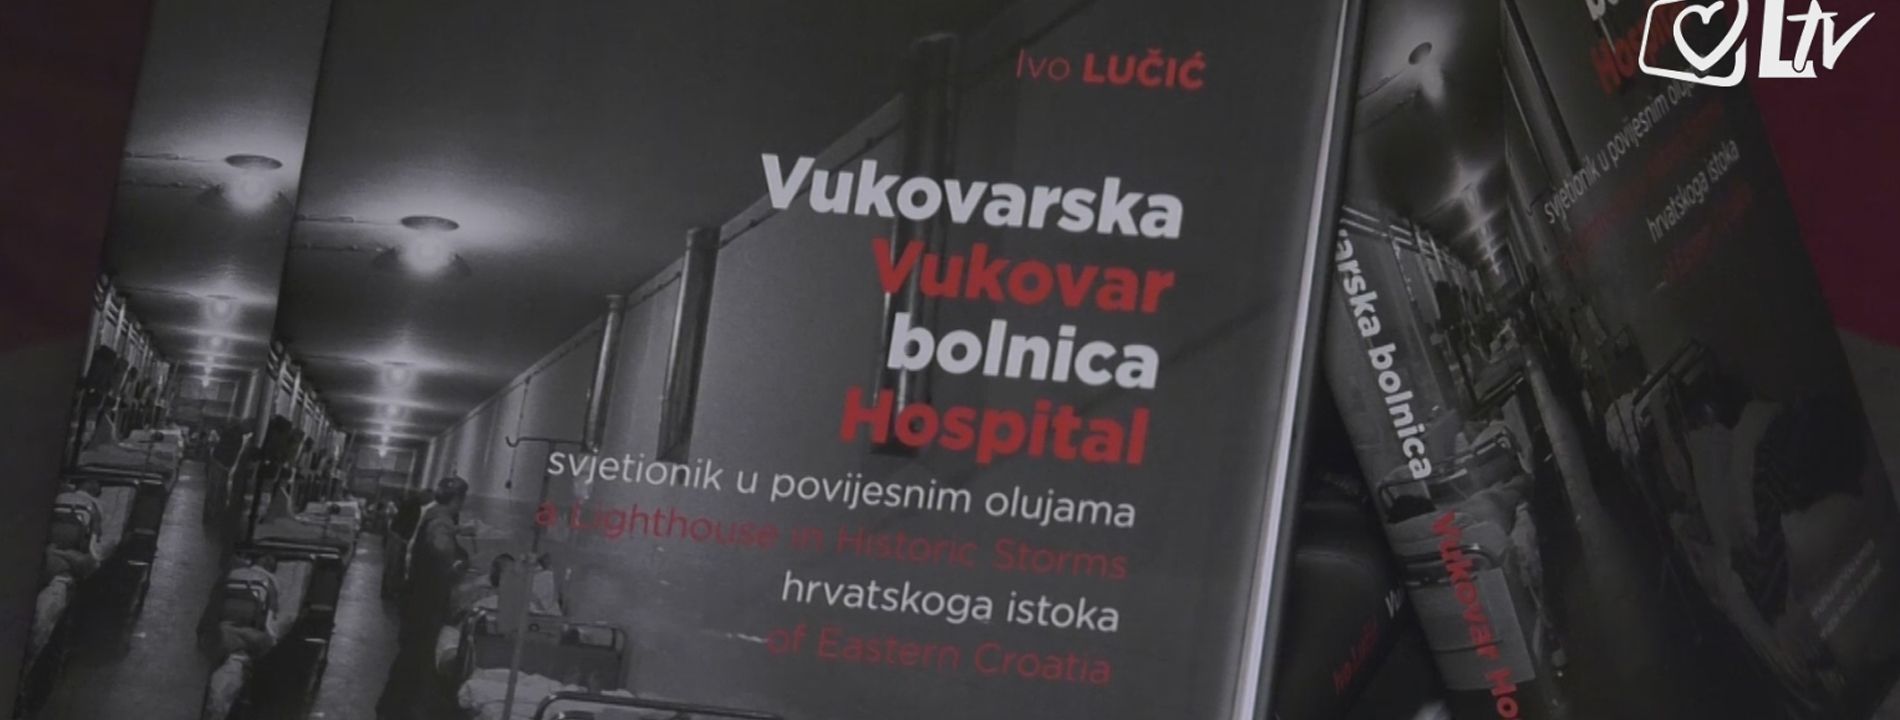 vukovarska-bolnica-knjiga